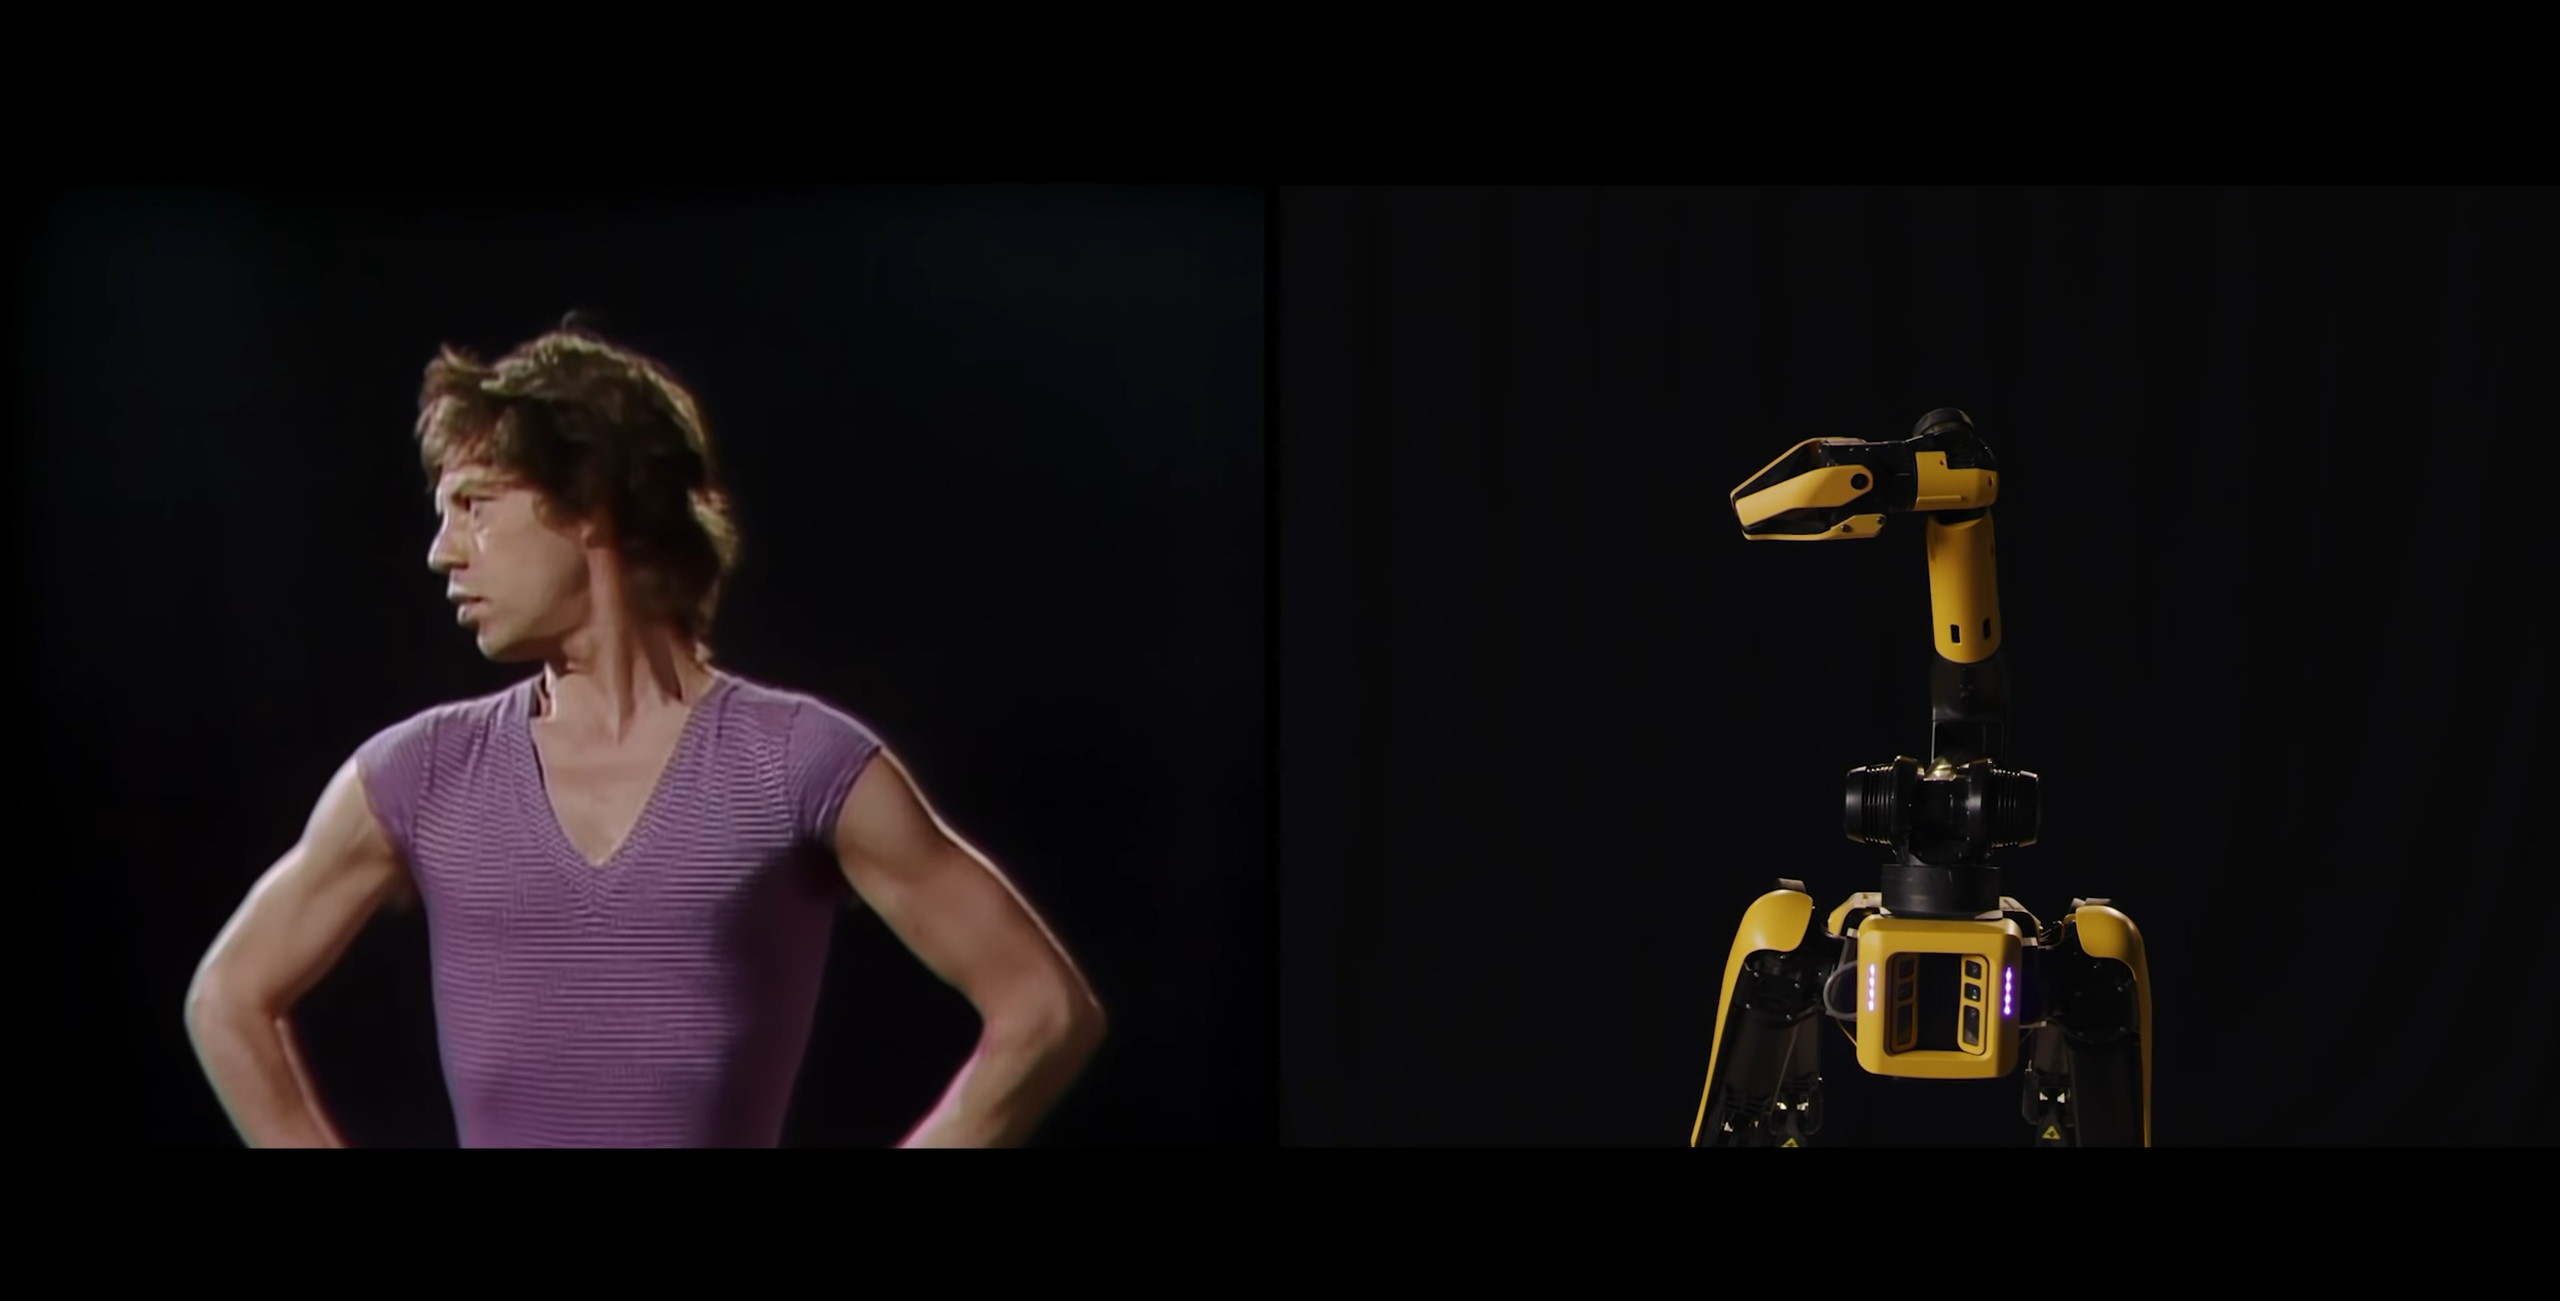 Le robot Spot est capable de reproduire la chorégraphie de Mick Jagger. © Boston Dynamics